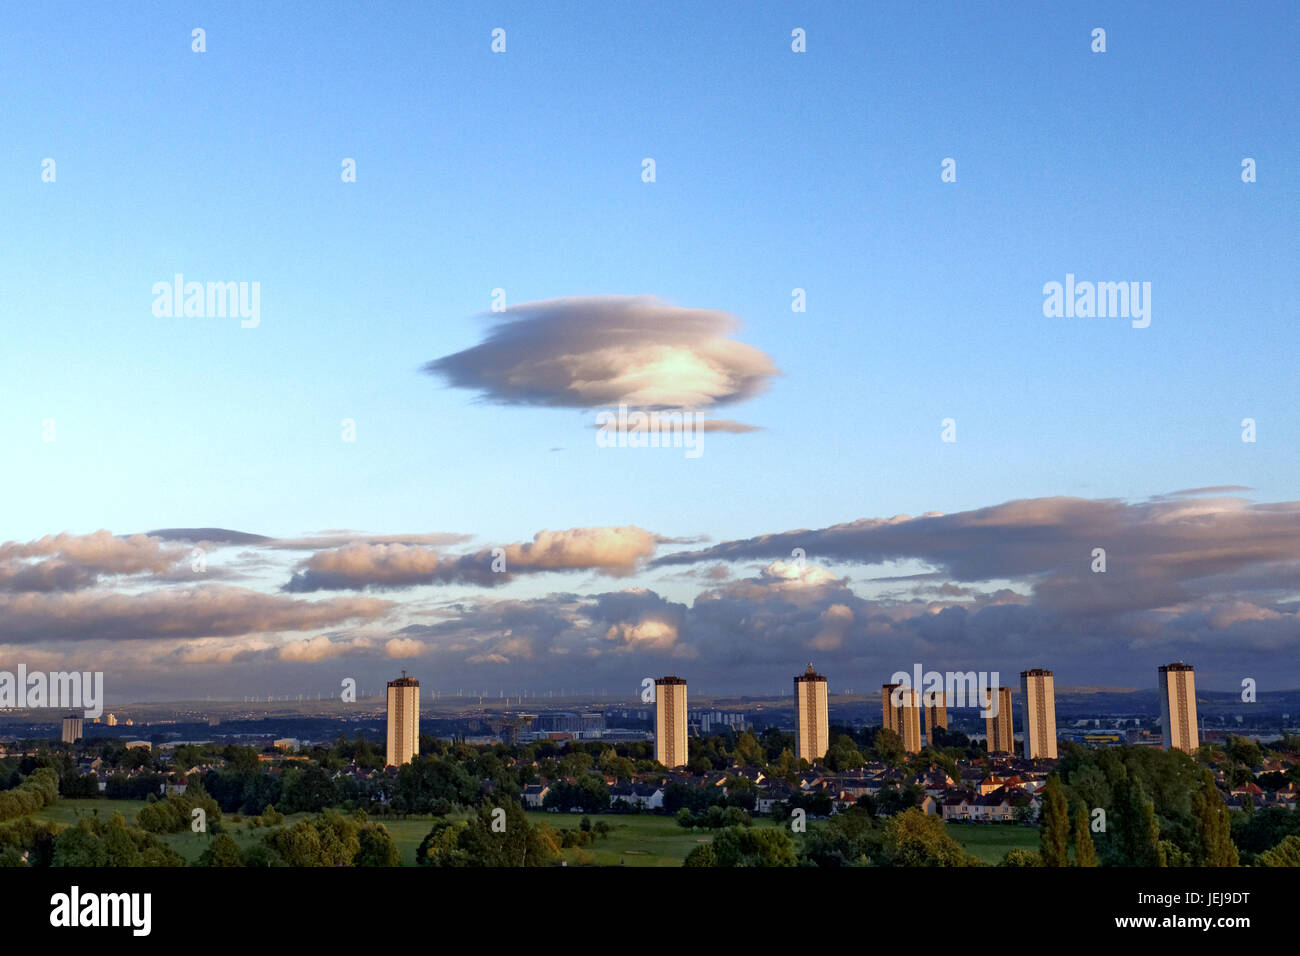 Glasgow, Escocia, Reino Unido, 25 de junio extraño OVNI enorme nave nodriza sobre la ciudad de forma lenticular, nubes altocúmulos lenticularis son nubes en forma de lente fija que se forman en la troposfera Crédito: Gerard Ferry/Alamy Live News Foto de stock